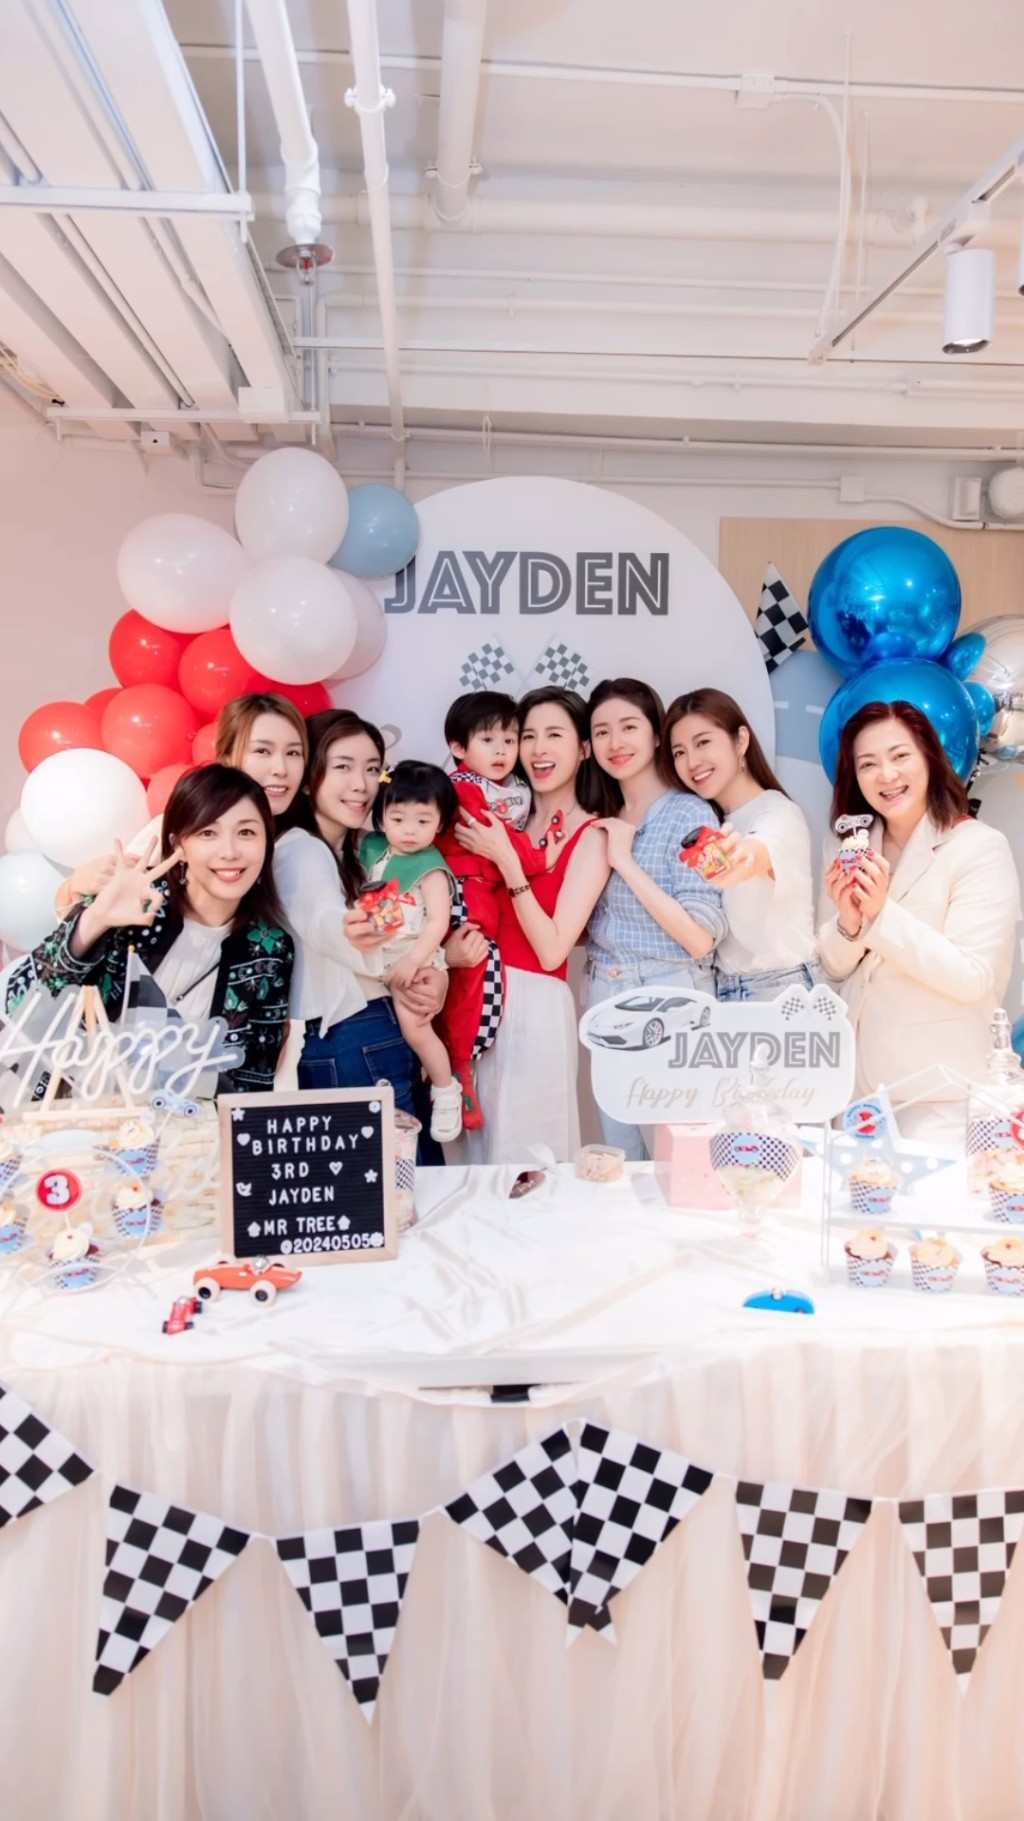 沈卓盈一班好友参加Jayden生日会。